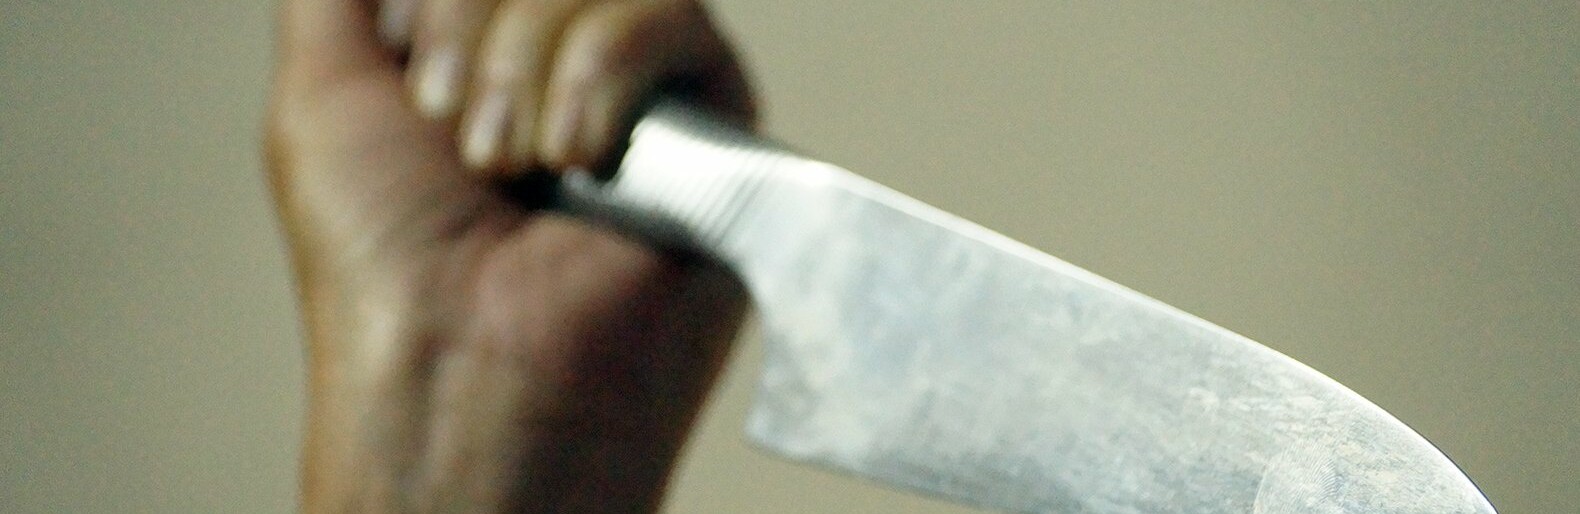 Белгородцу дали четыре года колонии за нападение на продавца с ножом